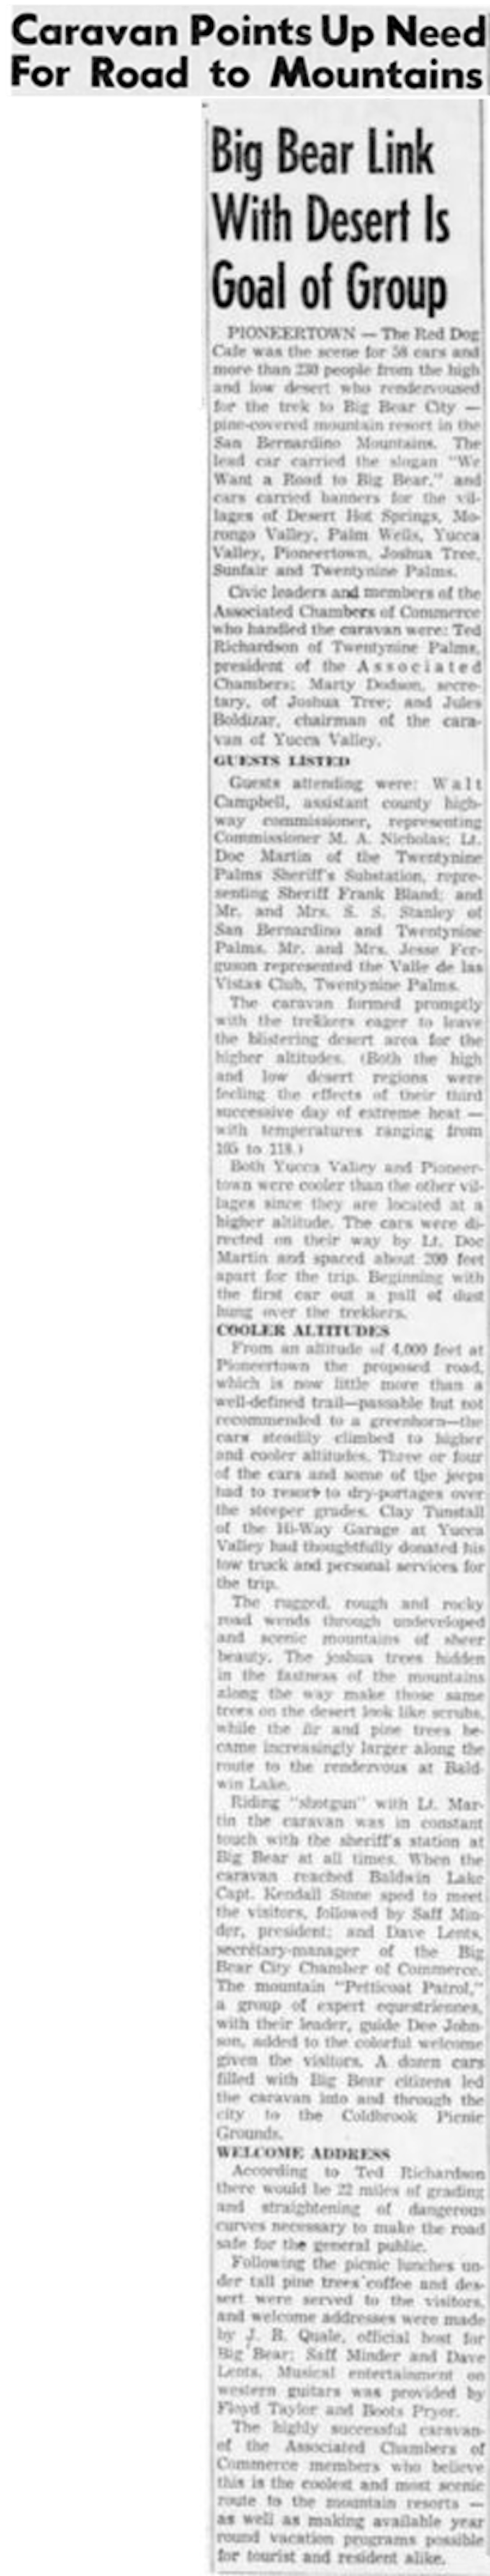 Jun. 12, 1955 - The San Bernardino County Sun